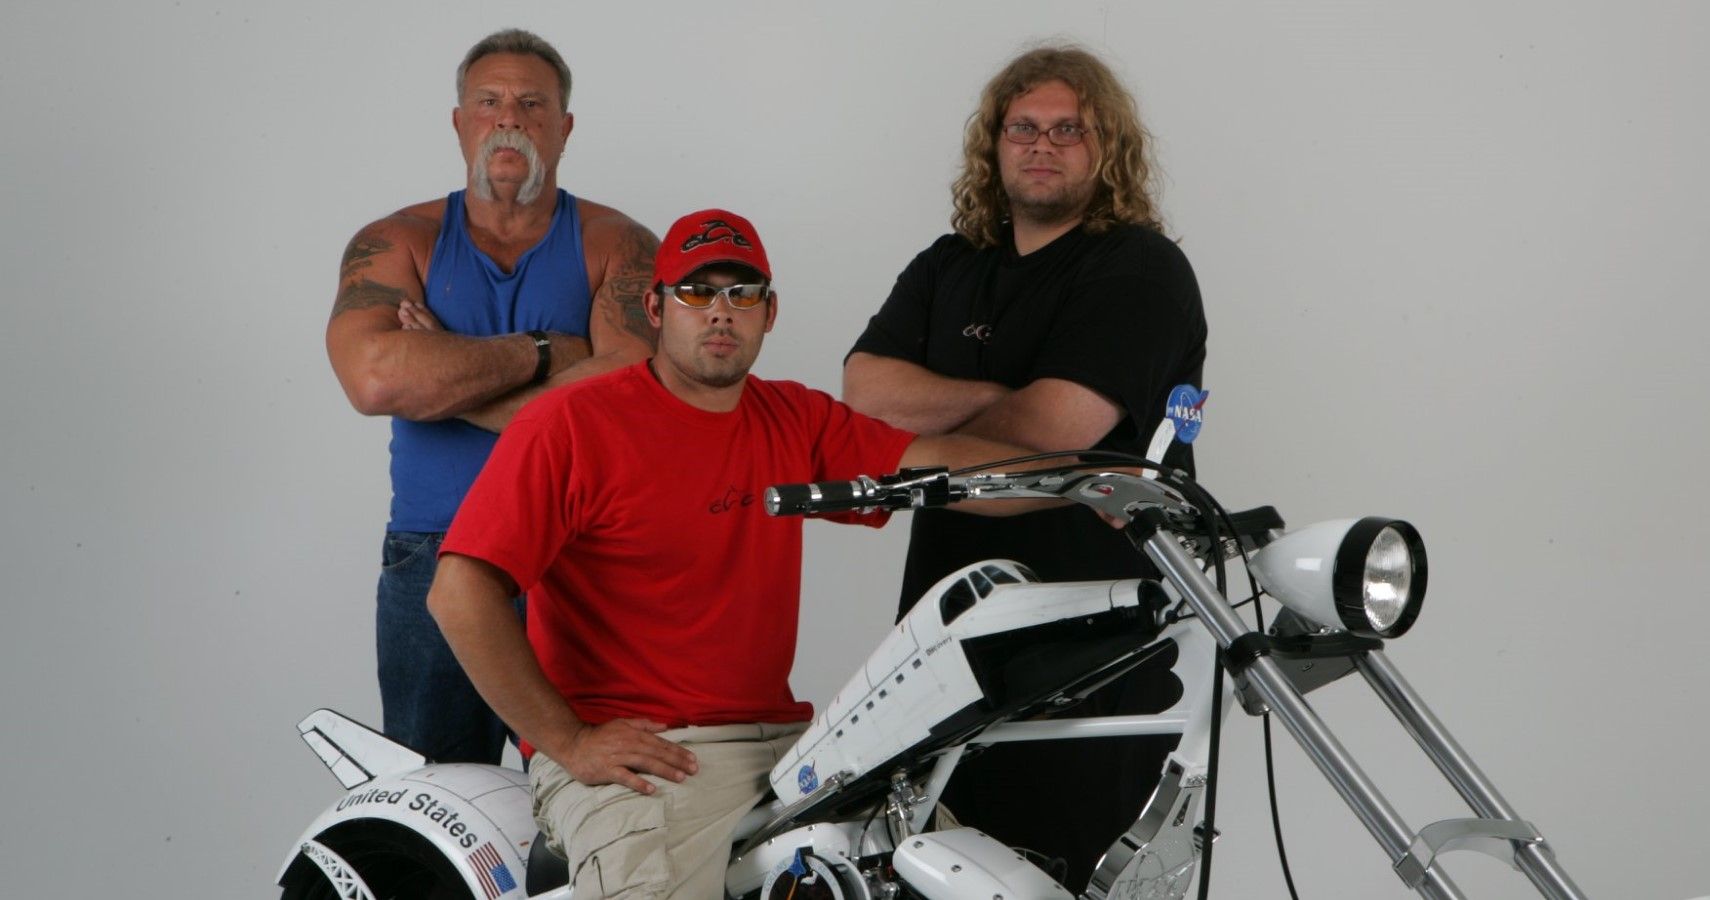 Paul Teutul Sr, Paul Teutul Jr, and Mikey Teutel before Orange County Chopper days